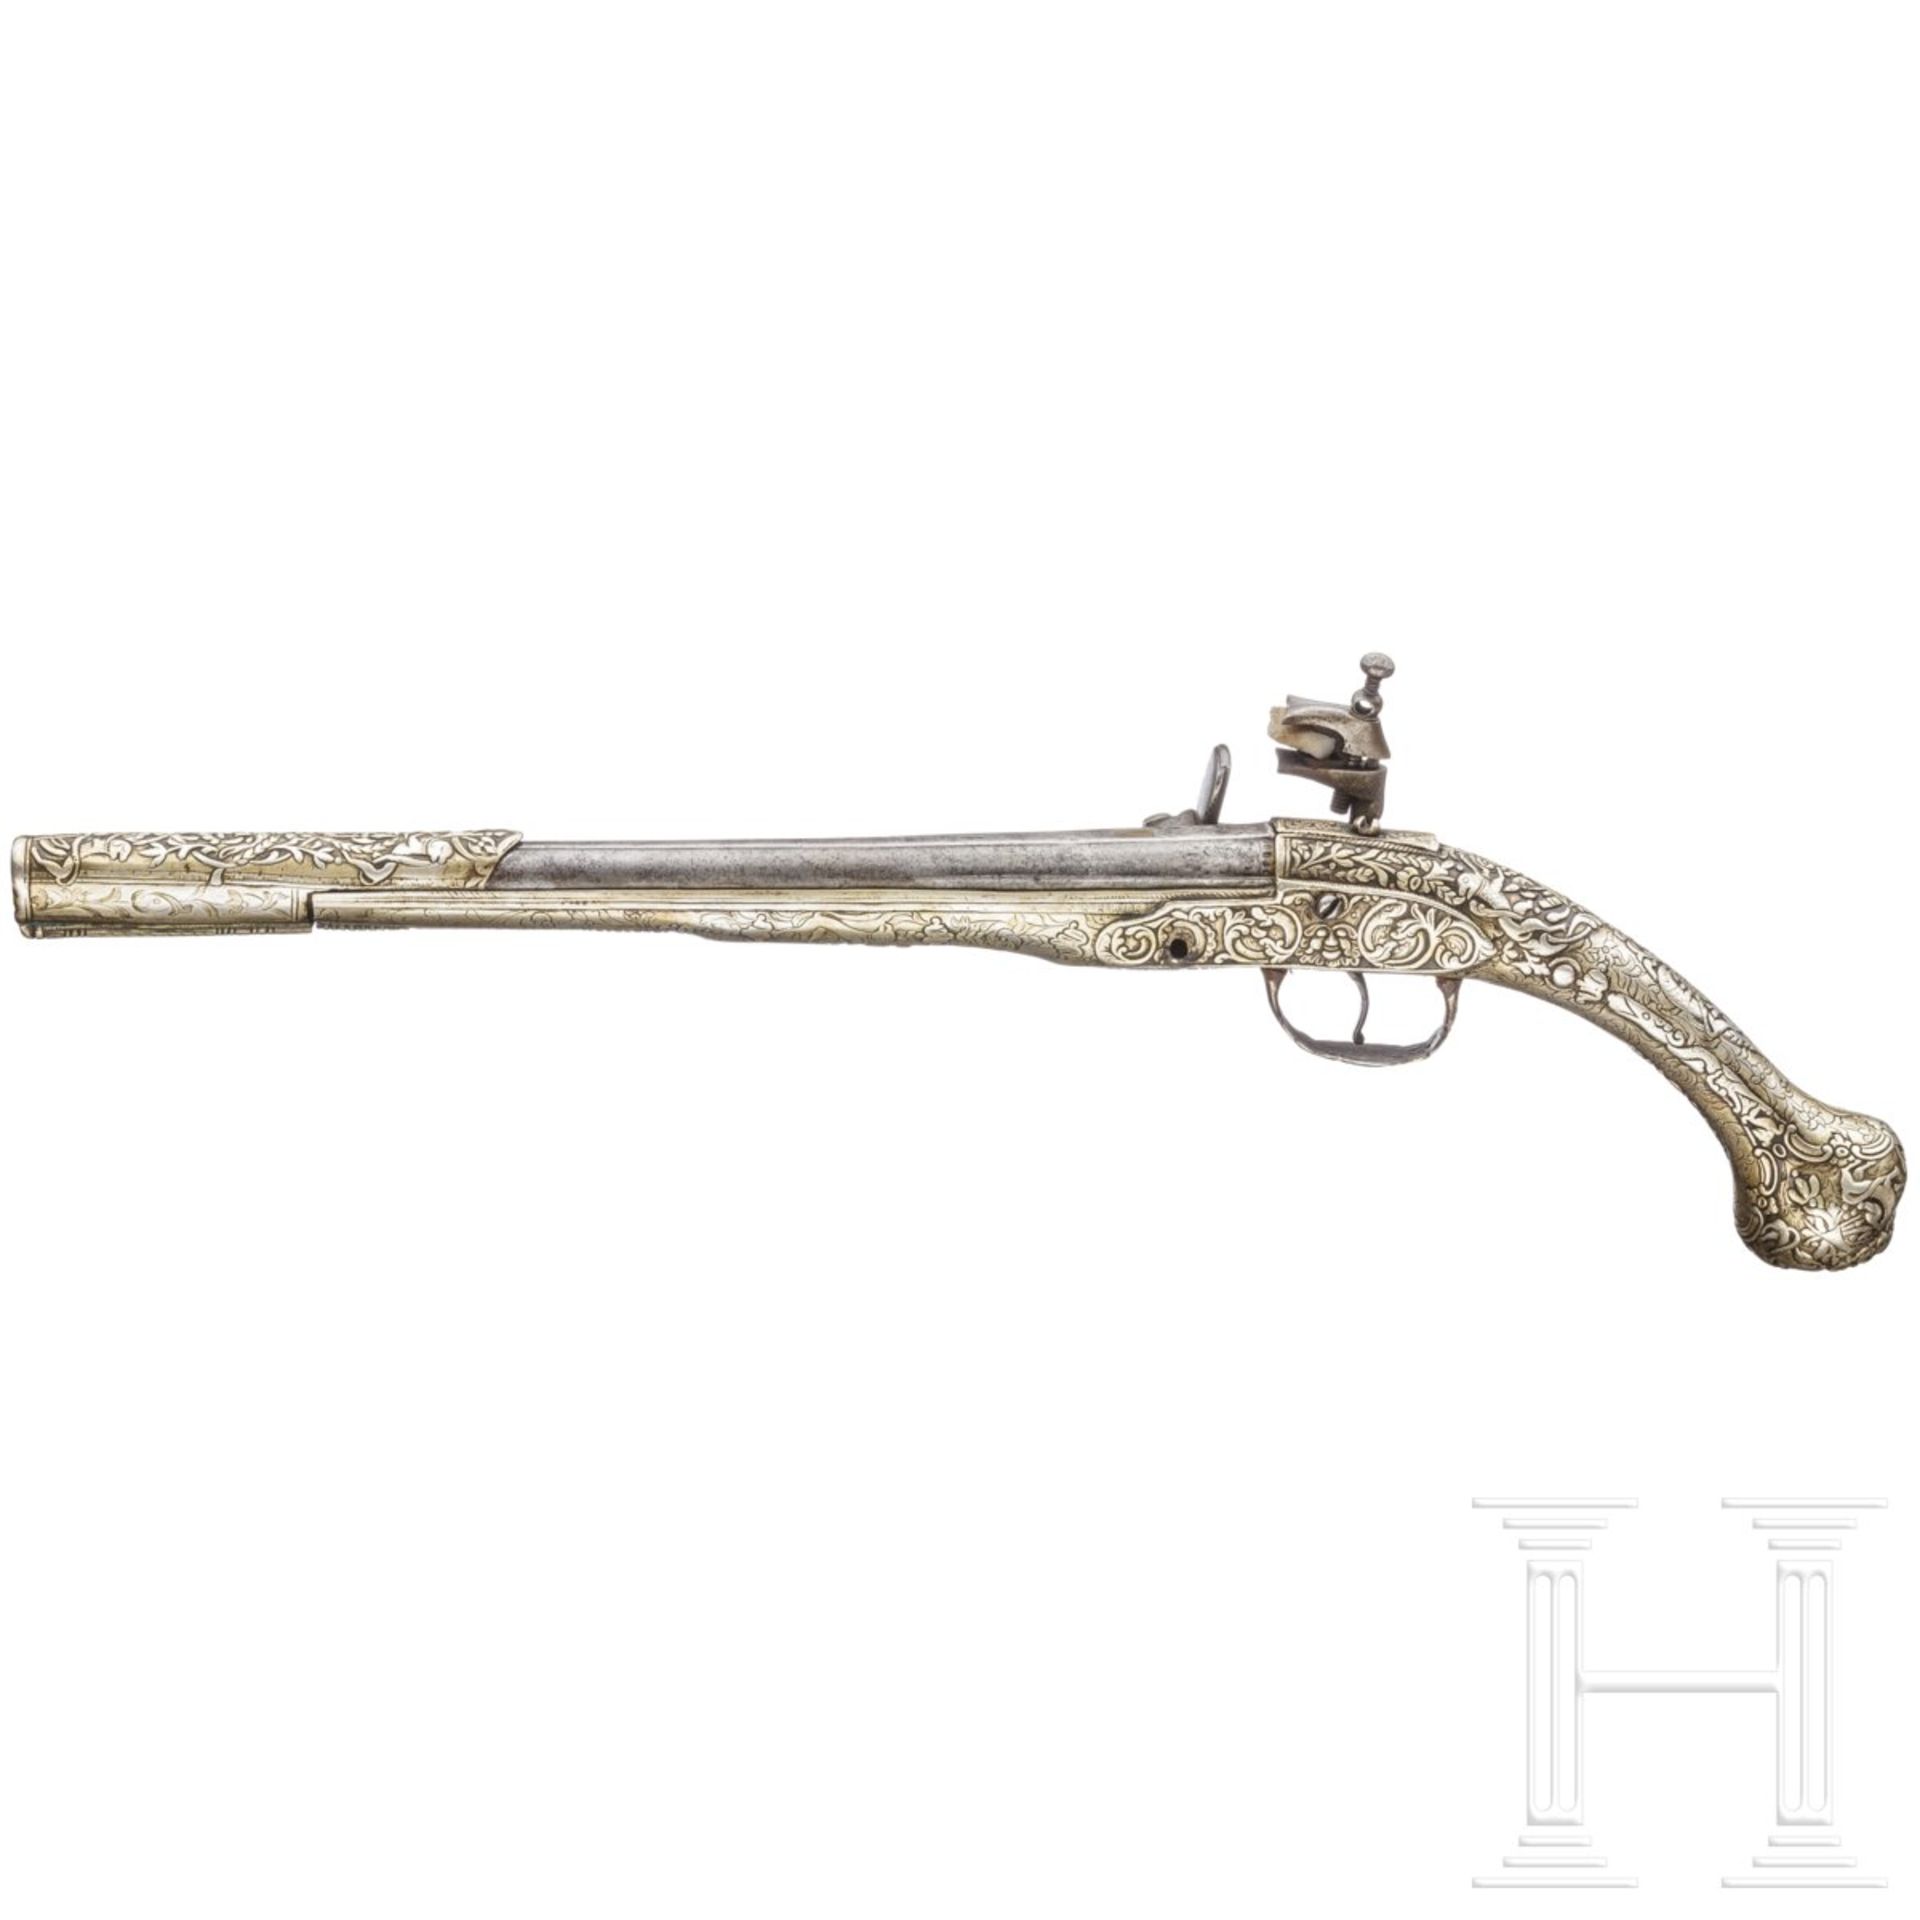 Silbergeschäftete Miquelet-Pistole, balkantürkisch/Albanien, um 1850 - Bild 2 aus 4